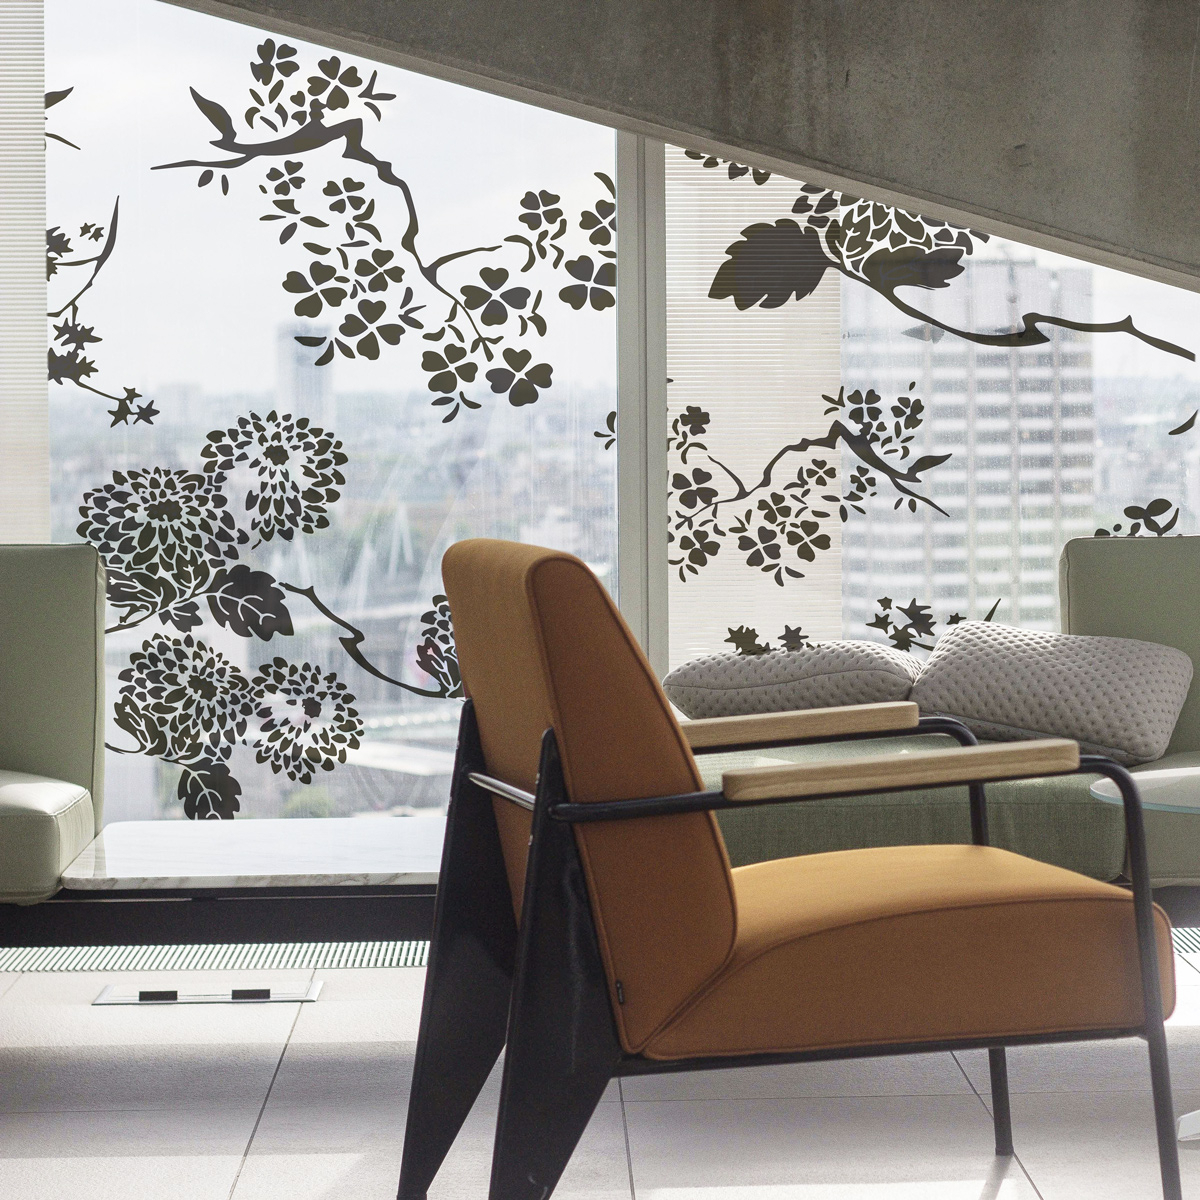 Vitrophanie - Decorative window film Fleurs d'Asie Collection Lili Bambou Design - Acte-Deco